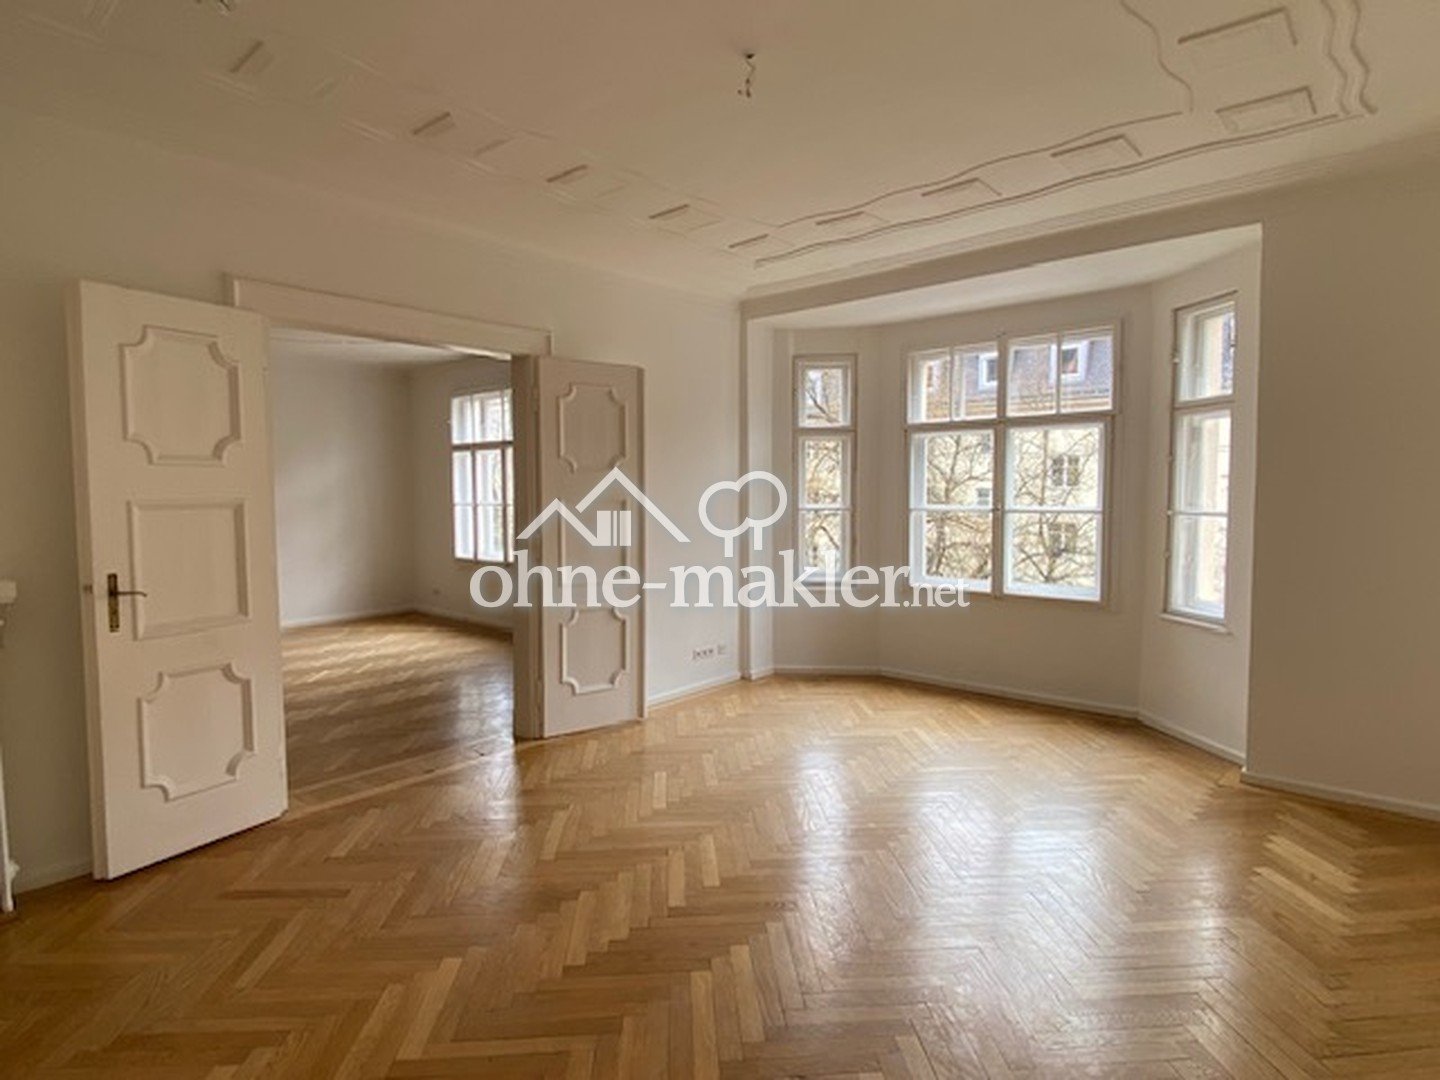 Nähe Prinzregentenplatz! Perfekt für Familie oder WG, 5 Zimmer-Altbau-Wohnung mit Balkon und EBK!